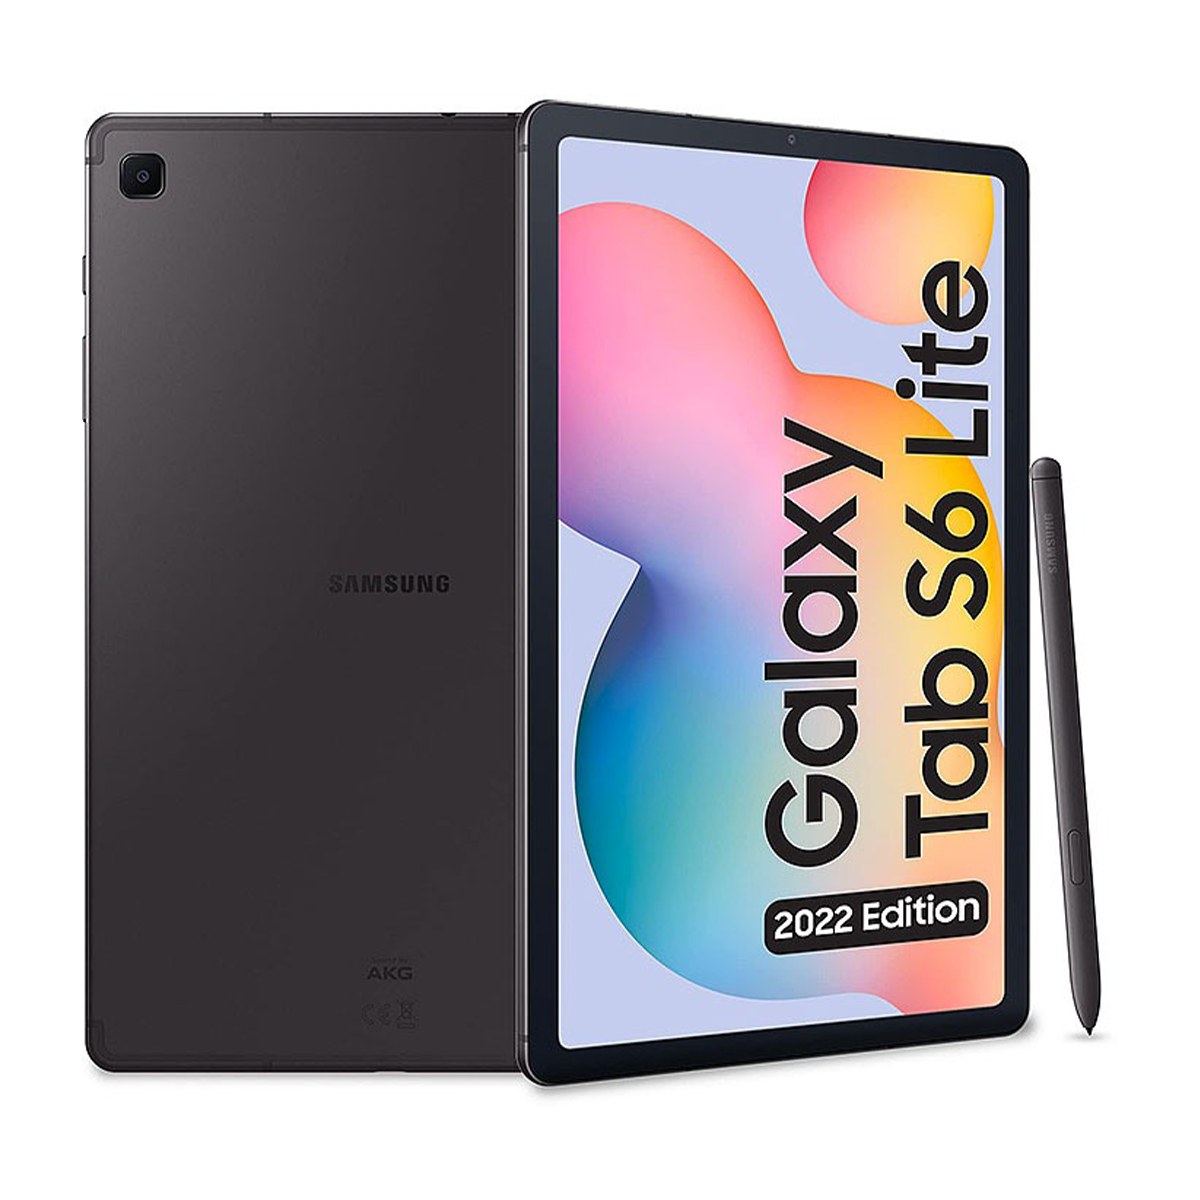  تبلت سامسونگ مدل Galaxy Tab S6 Lite (2022) - P619 - ظرفیت 64 گیگابایت - رم 4 گیگابایت